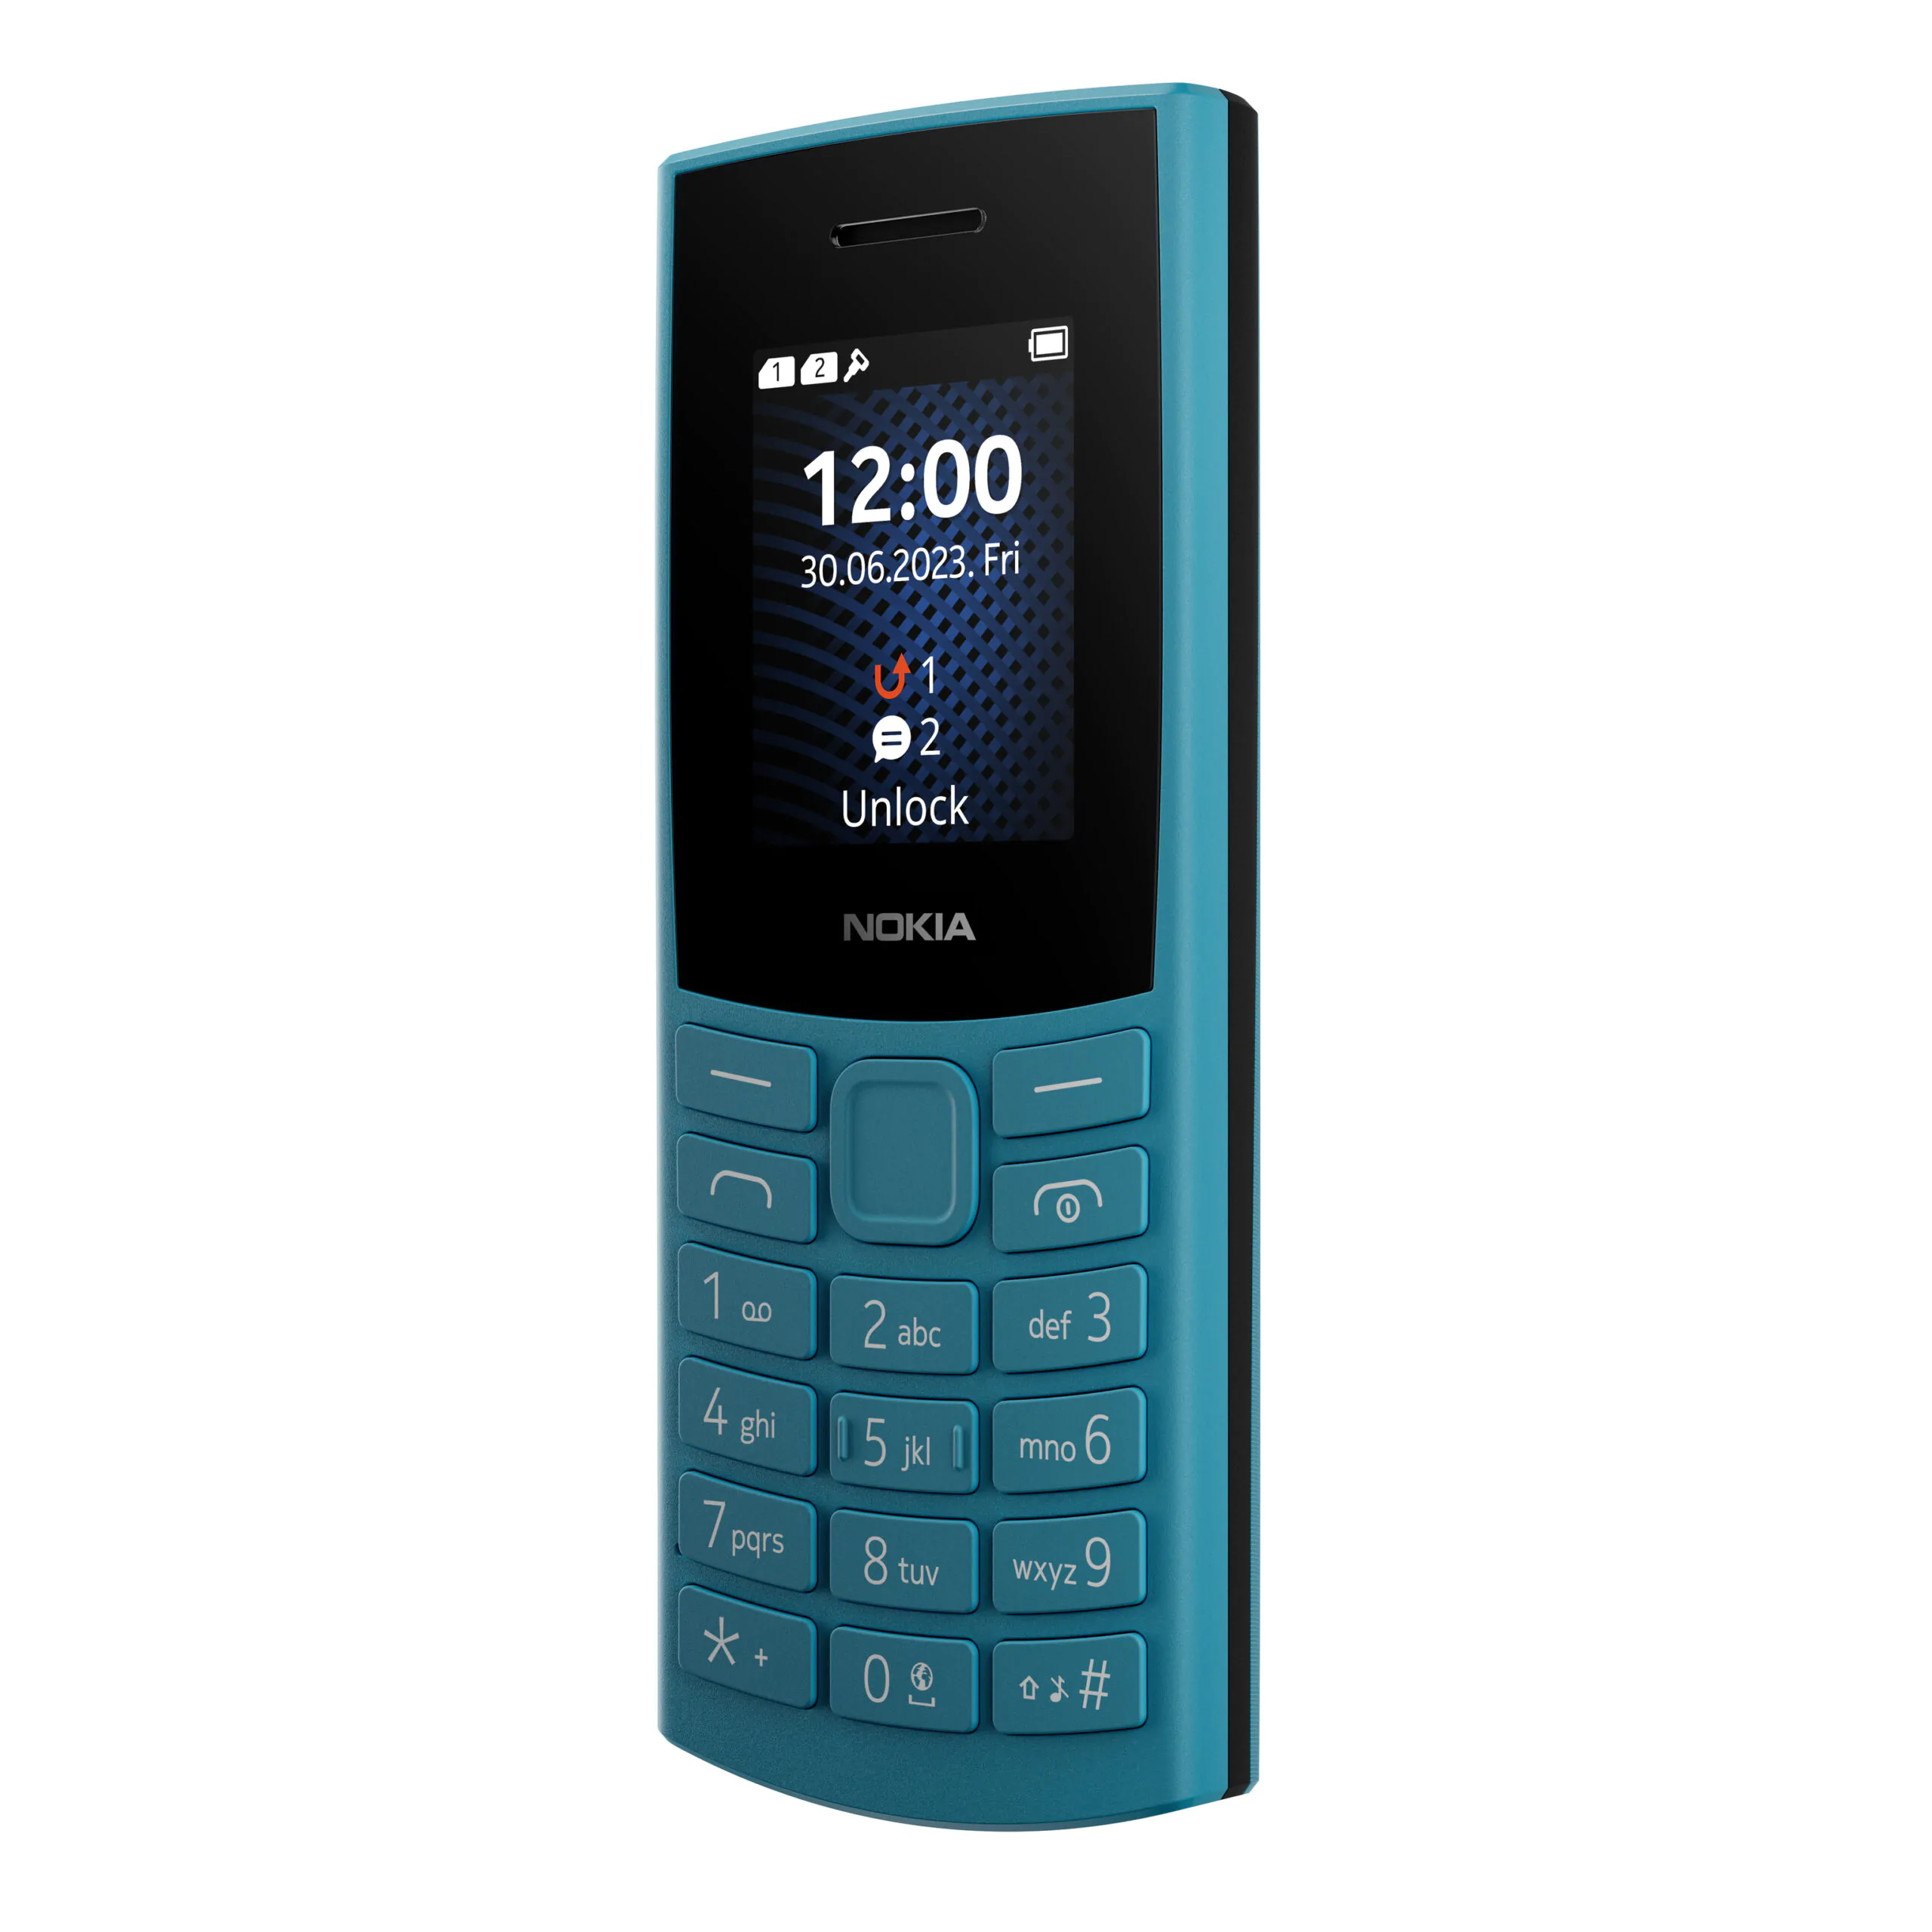 Nokia 105 4G 1 scaled | Nokia 105 4G | โนเกียส่งฟีเจอร์โฟน 2 รุ่นใหม่ Nokia 110 4G และ 105 4G ตอบรับมือถือปุ่มกดยังมีดีมานด์